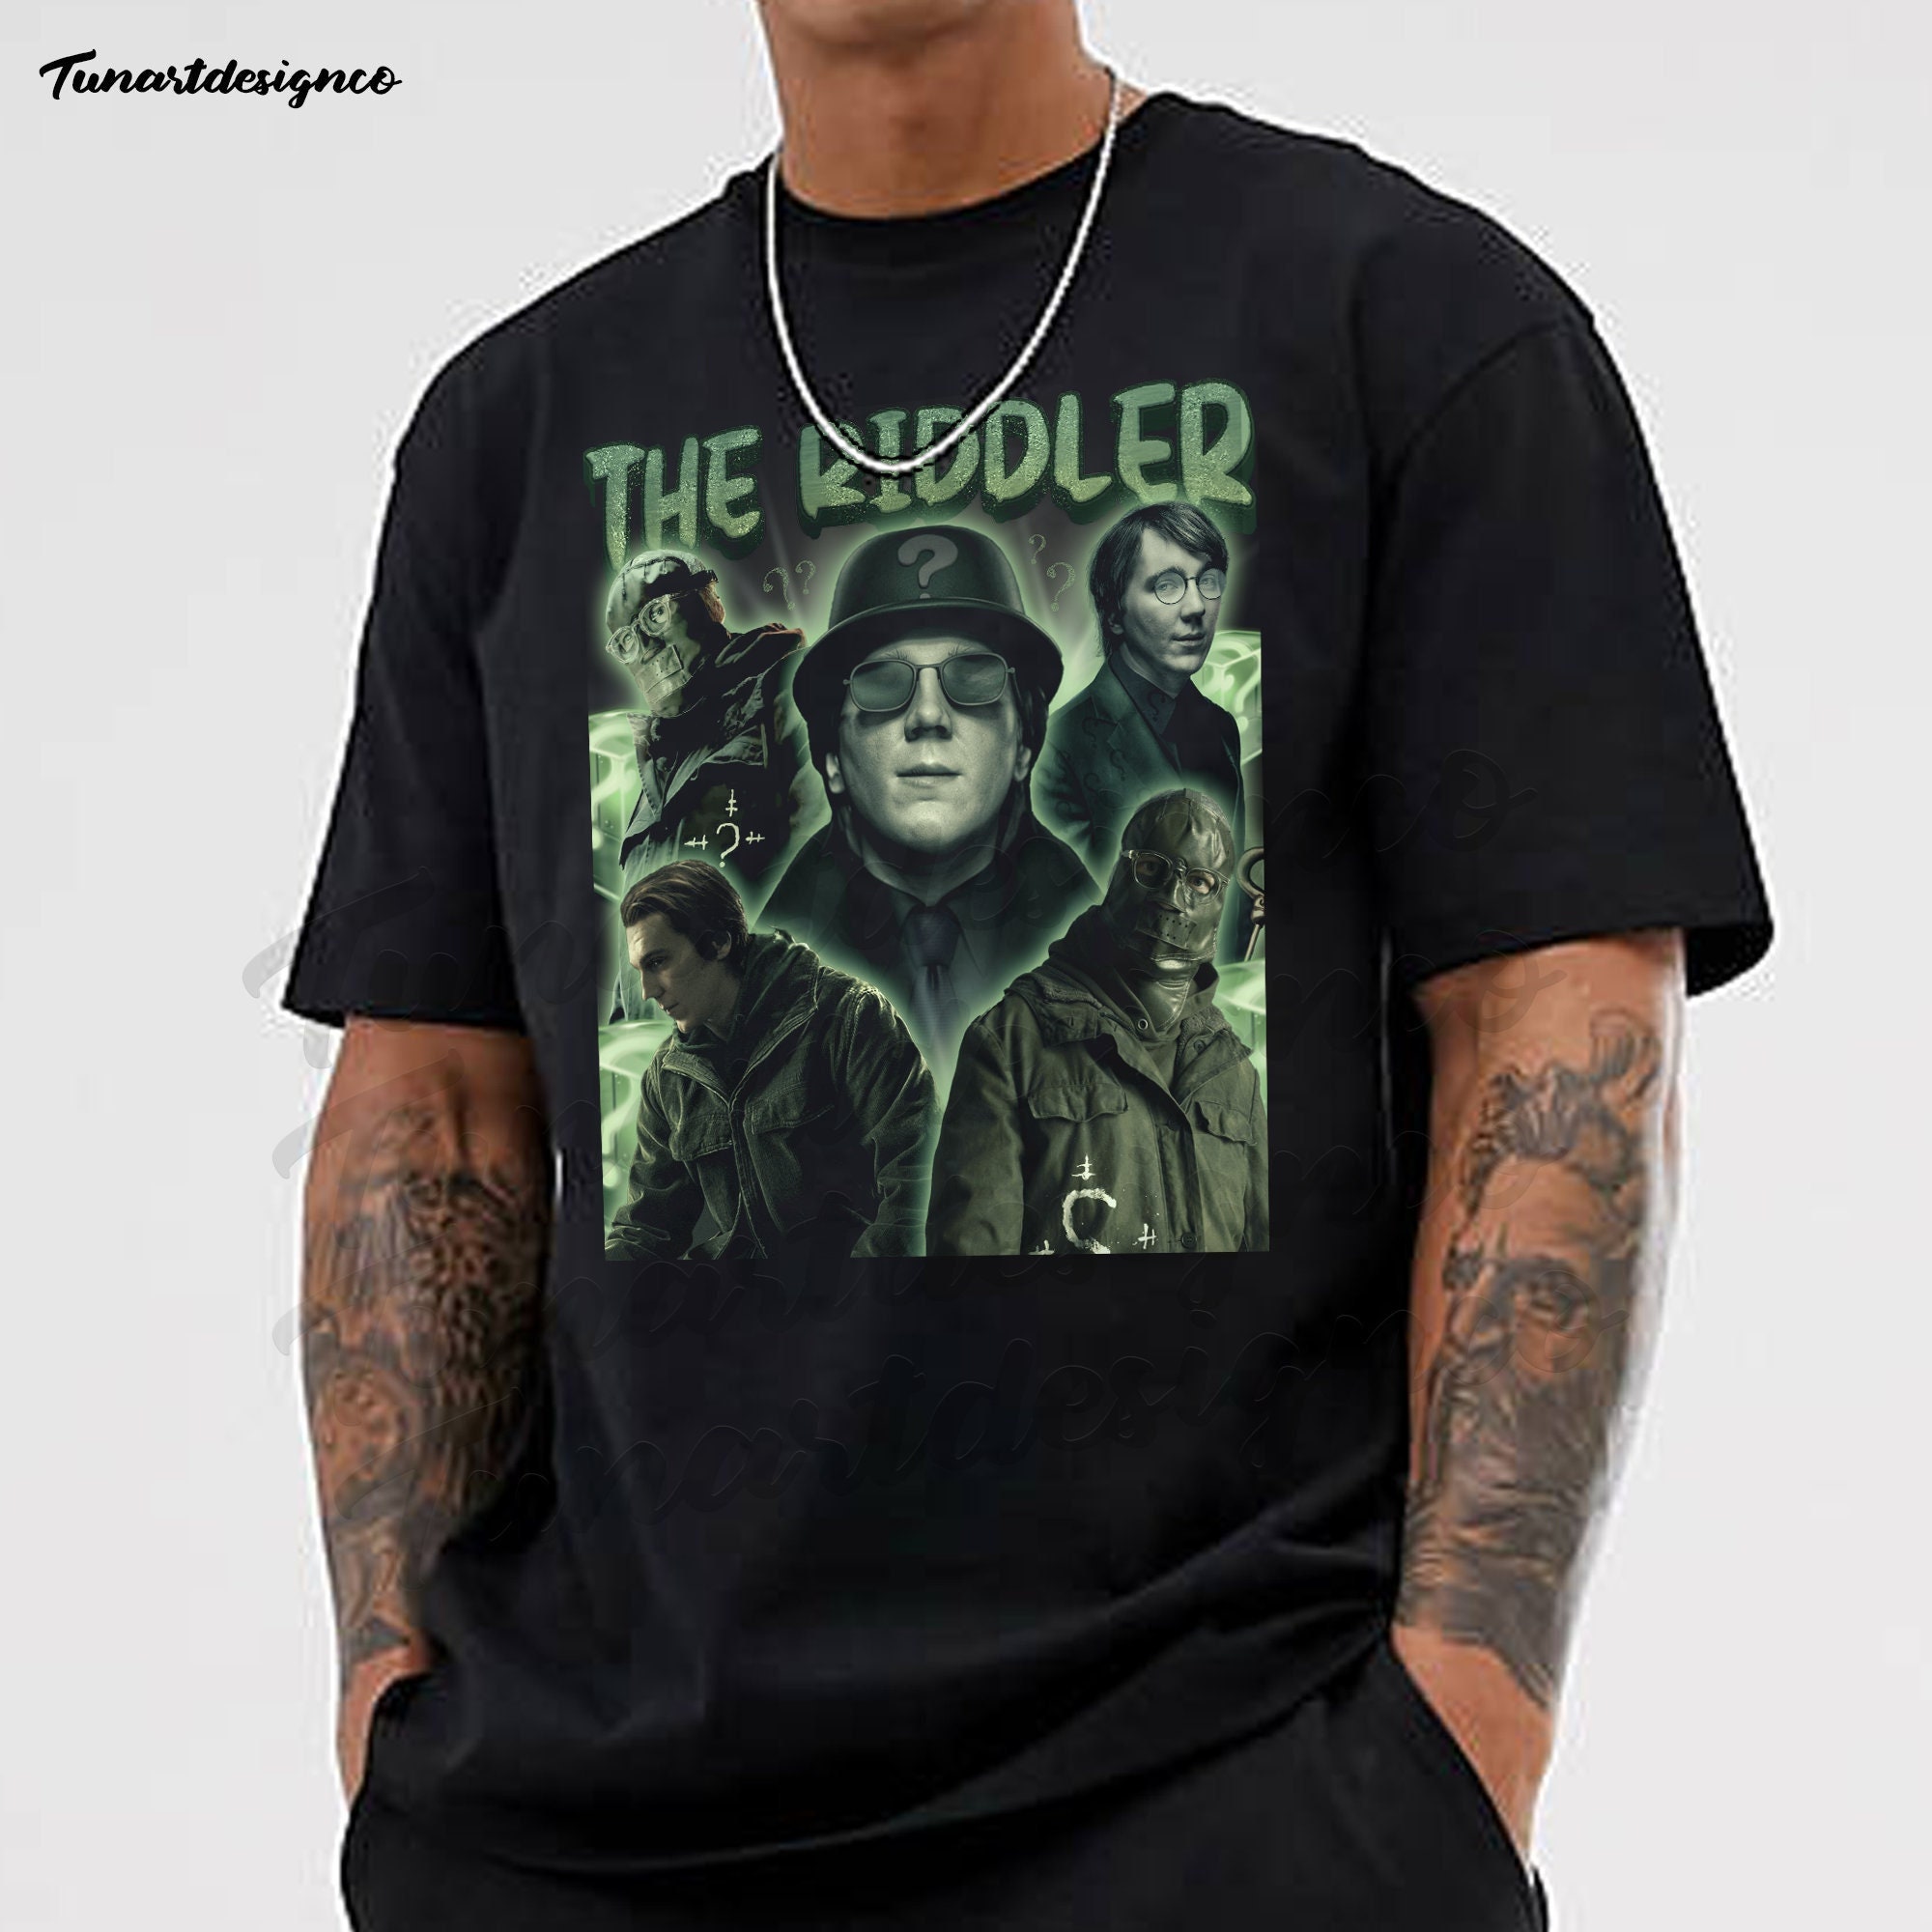 The Riddler Unisex T-Shirt